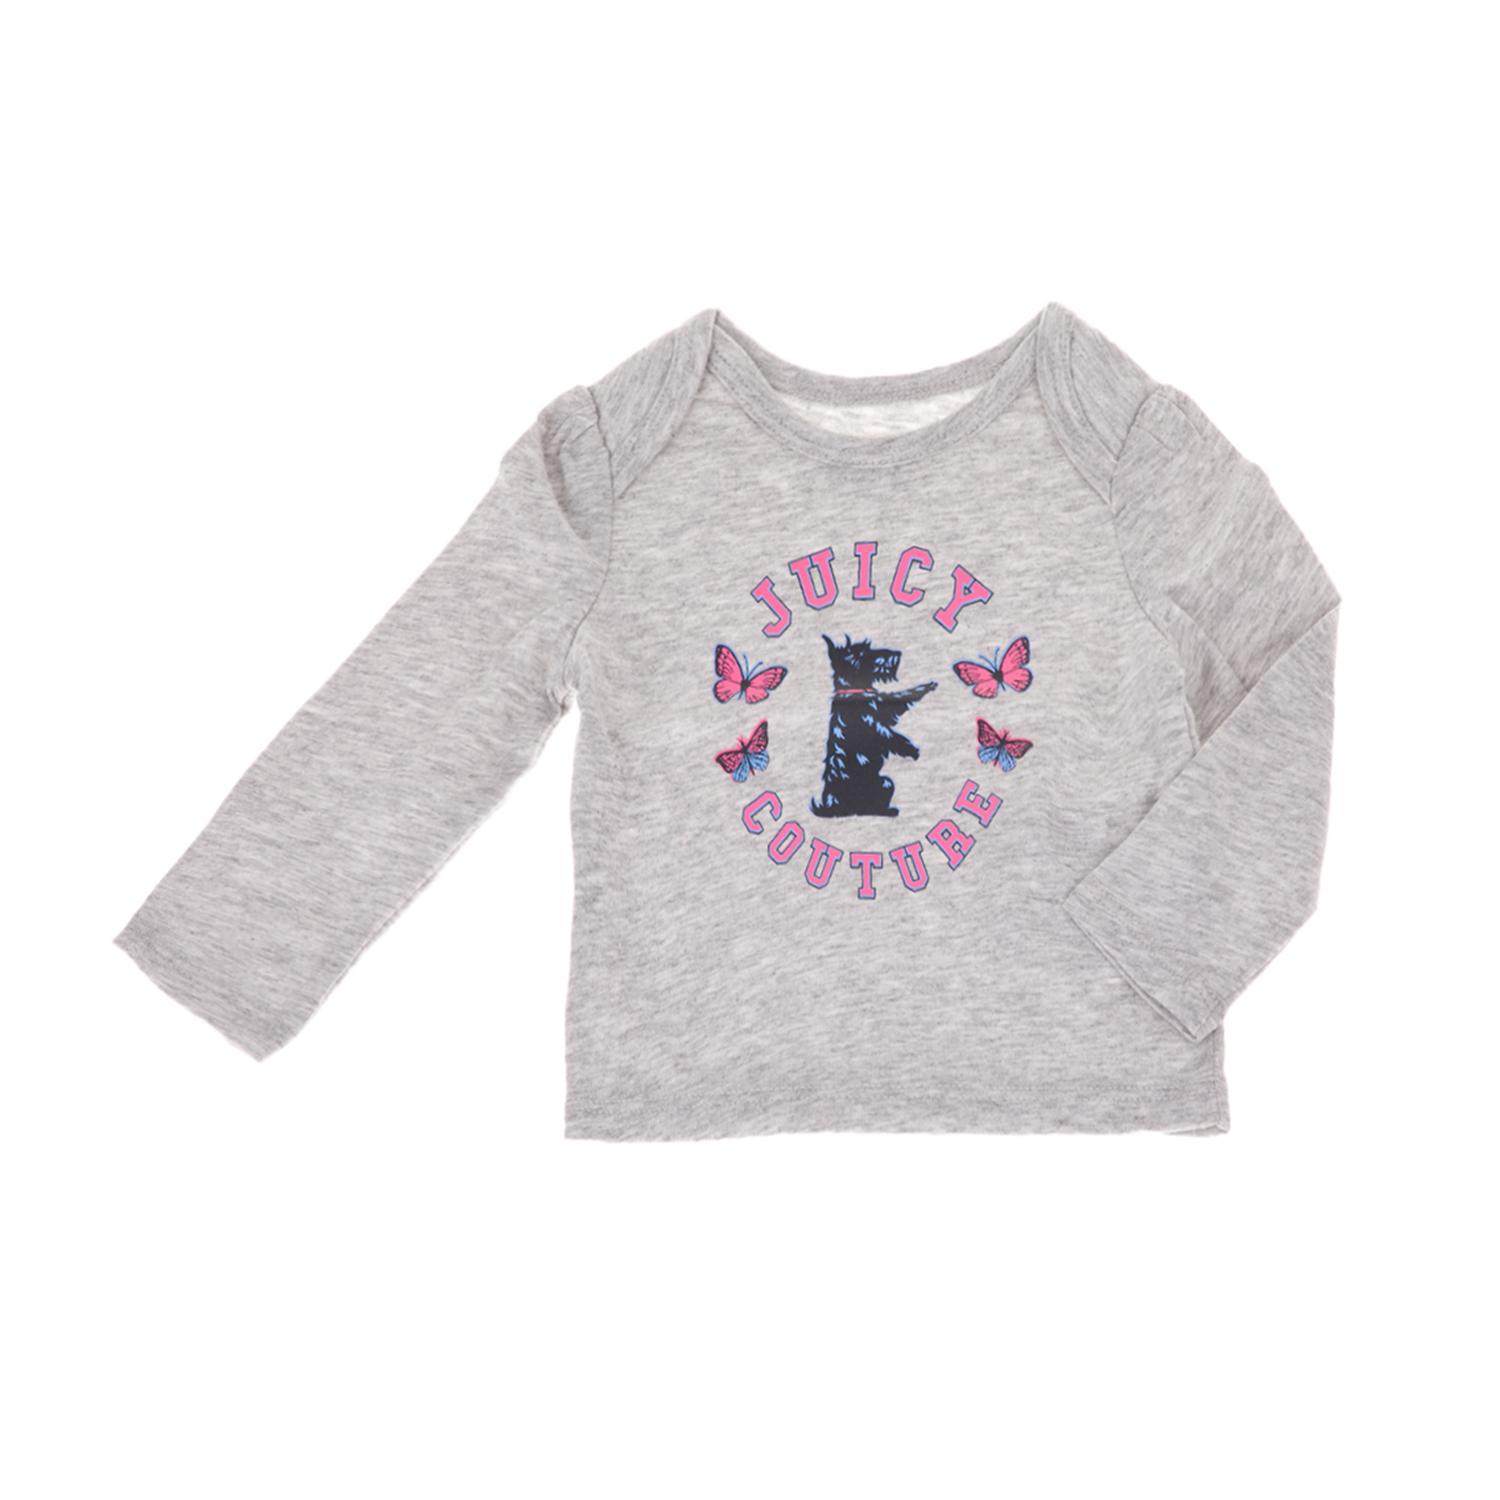 Παιδικά/Baby/Ρούχα/Μπλούζες JUICY COUTURE KIDS - Βρεφική μπλούζα JUICY COUTURE KIDS SCOTTIE BUTTERFLY γκρι